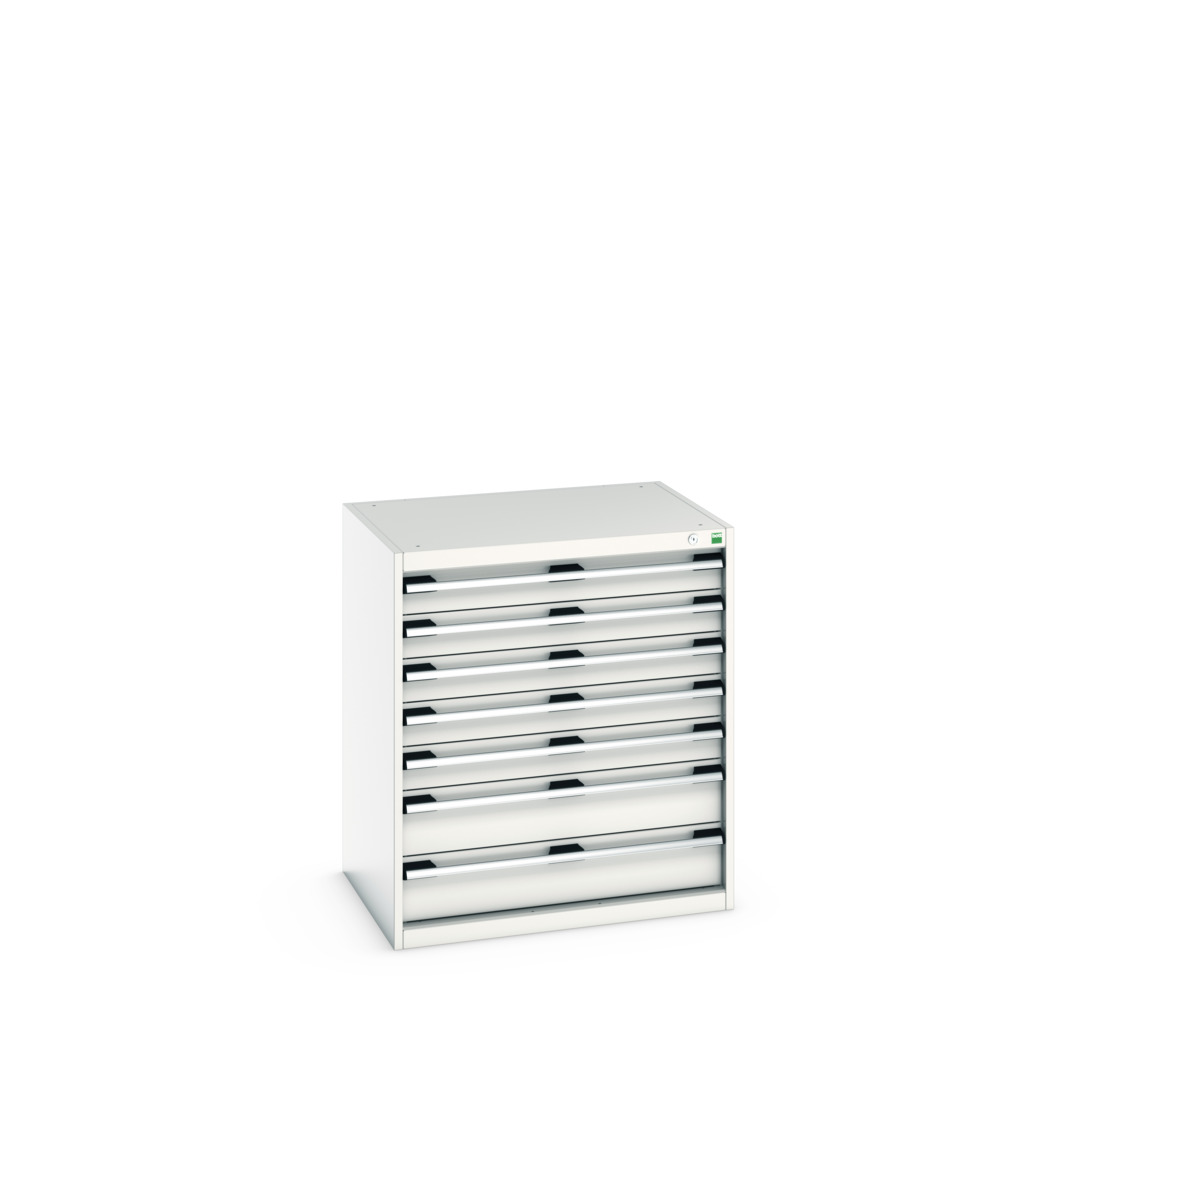 40020042.16V - cubio drawer cabinet